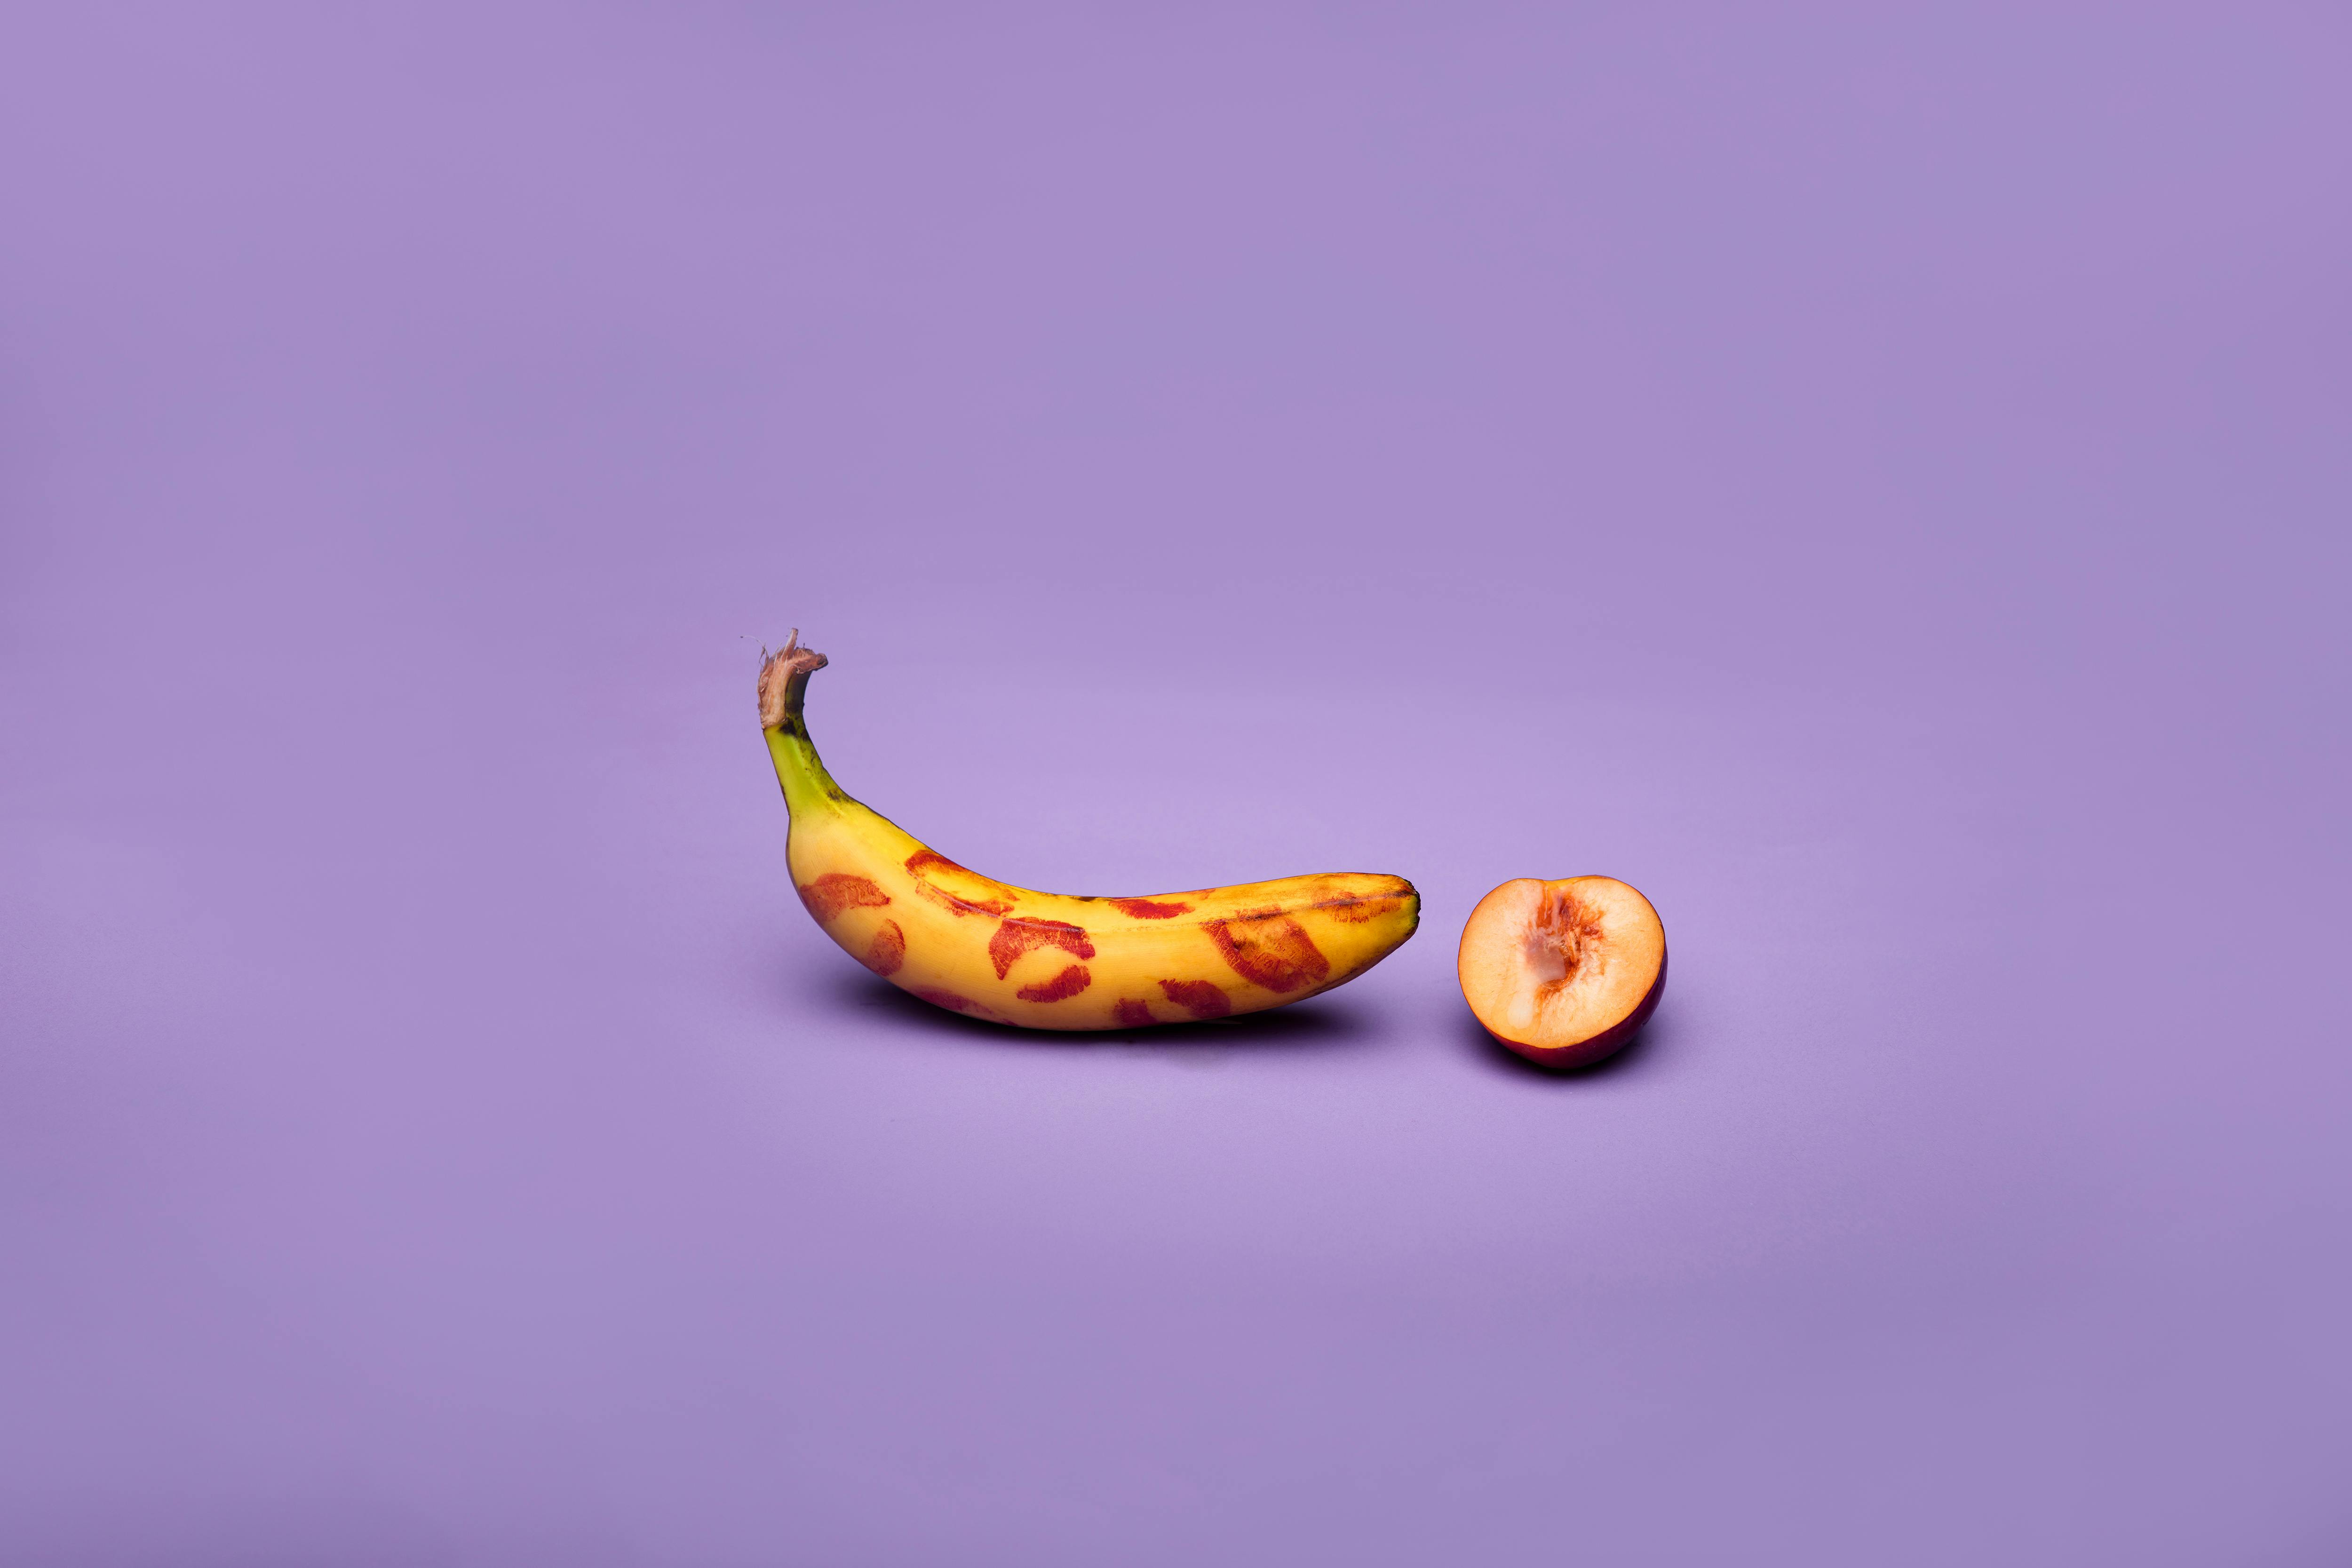 kiss marks on banana